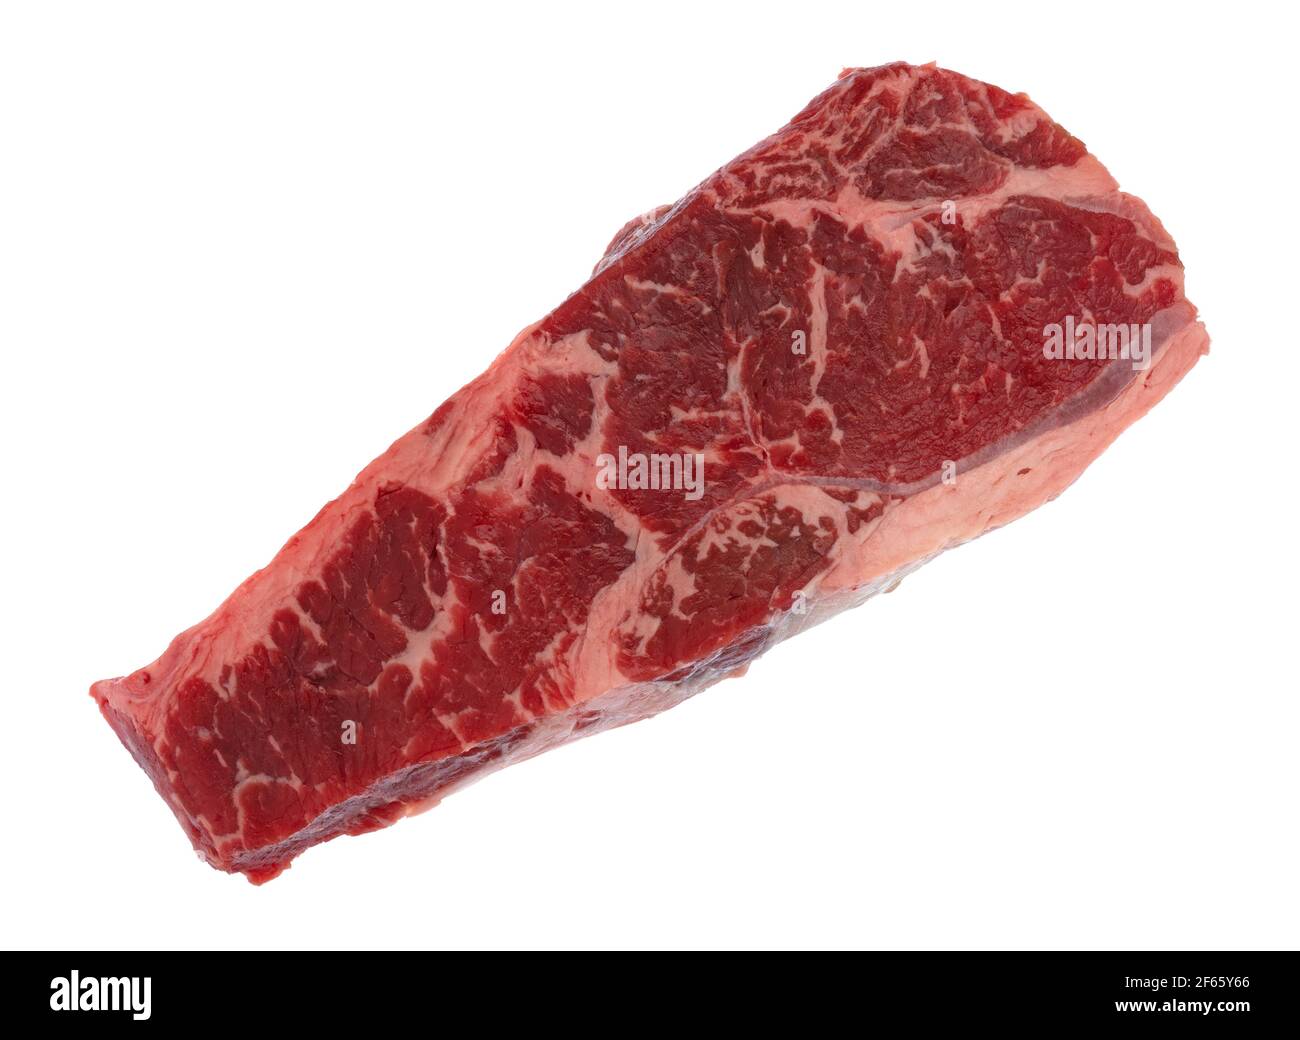 Rindslende ohne Knochen am Ende geschnitten Streifen Steak Draufsicht auf einem weißen Hintergrund. Stockfoto